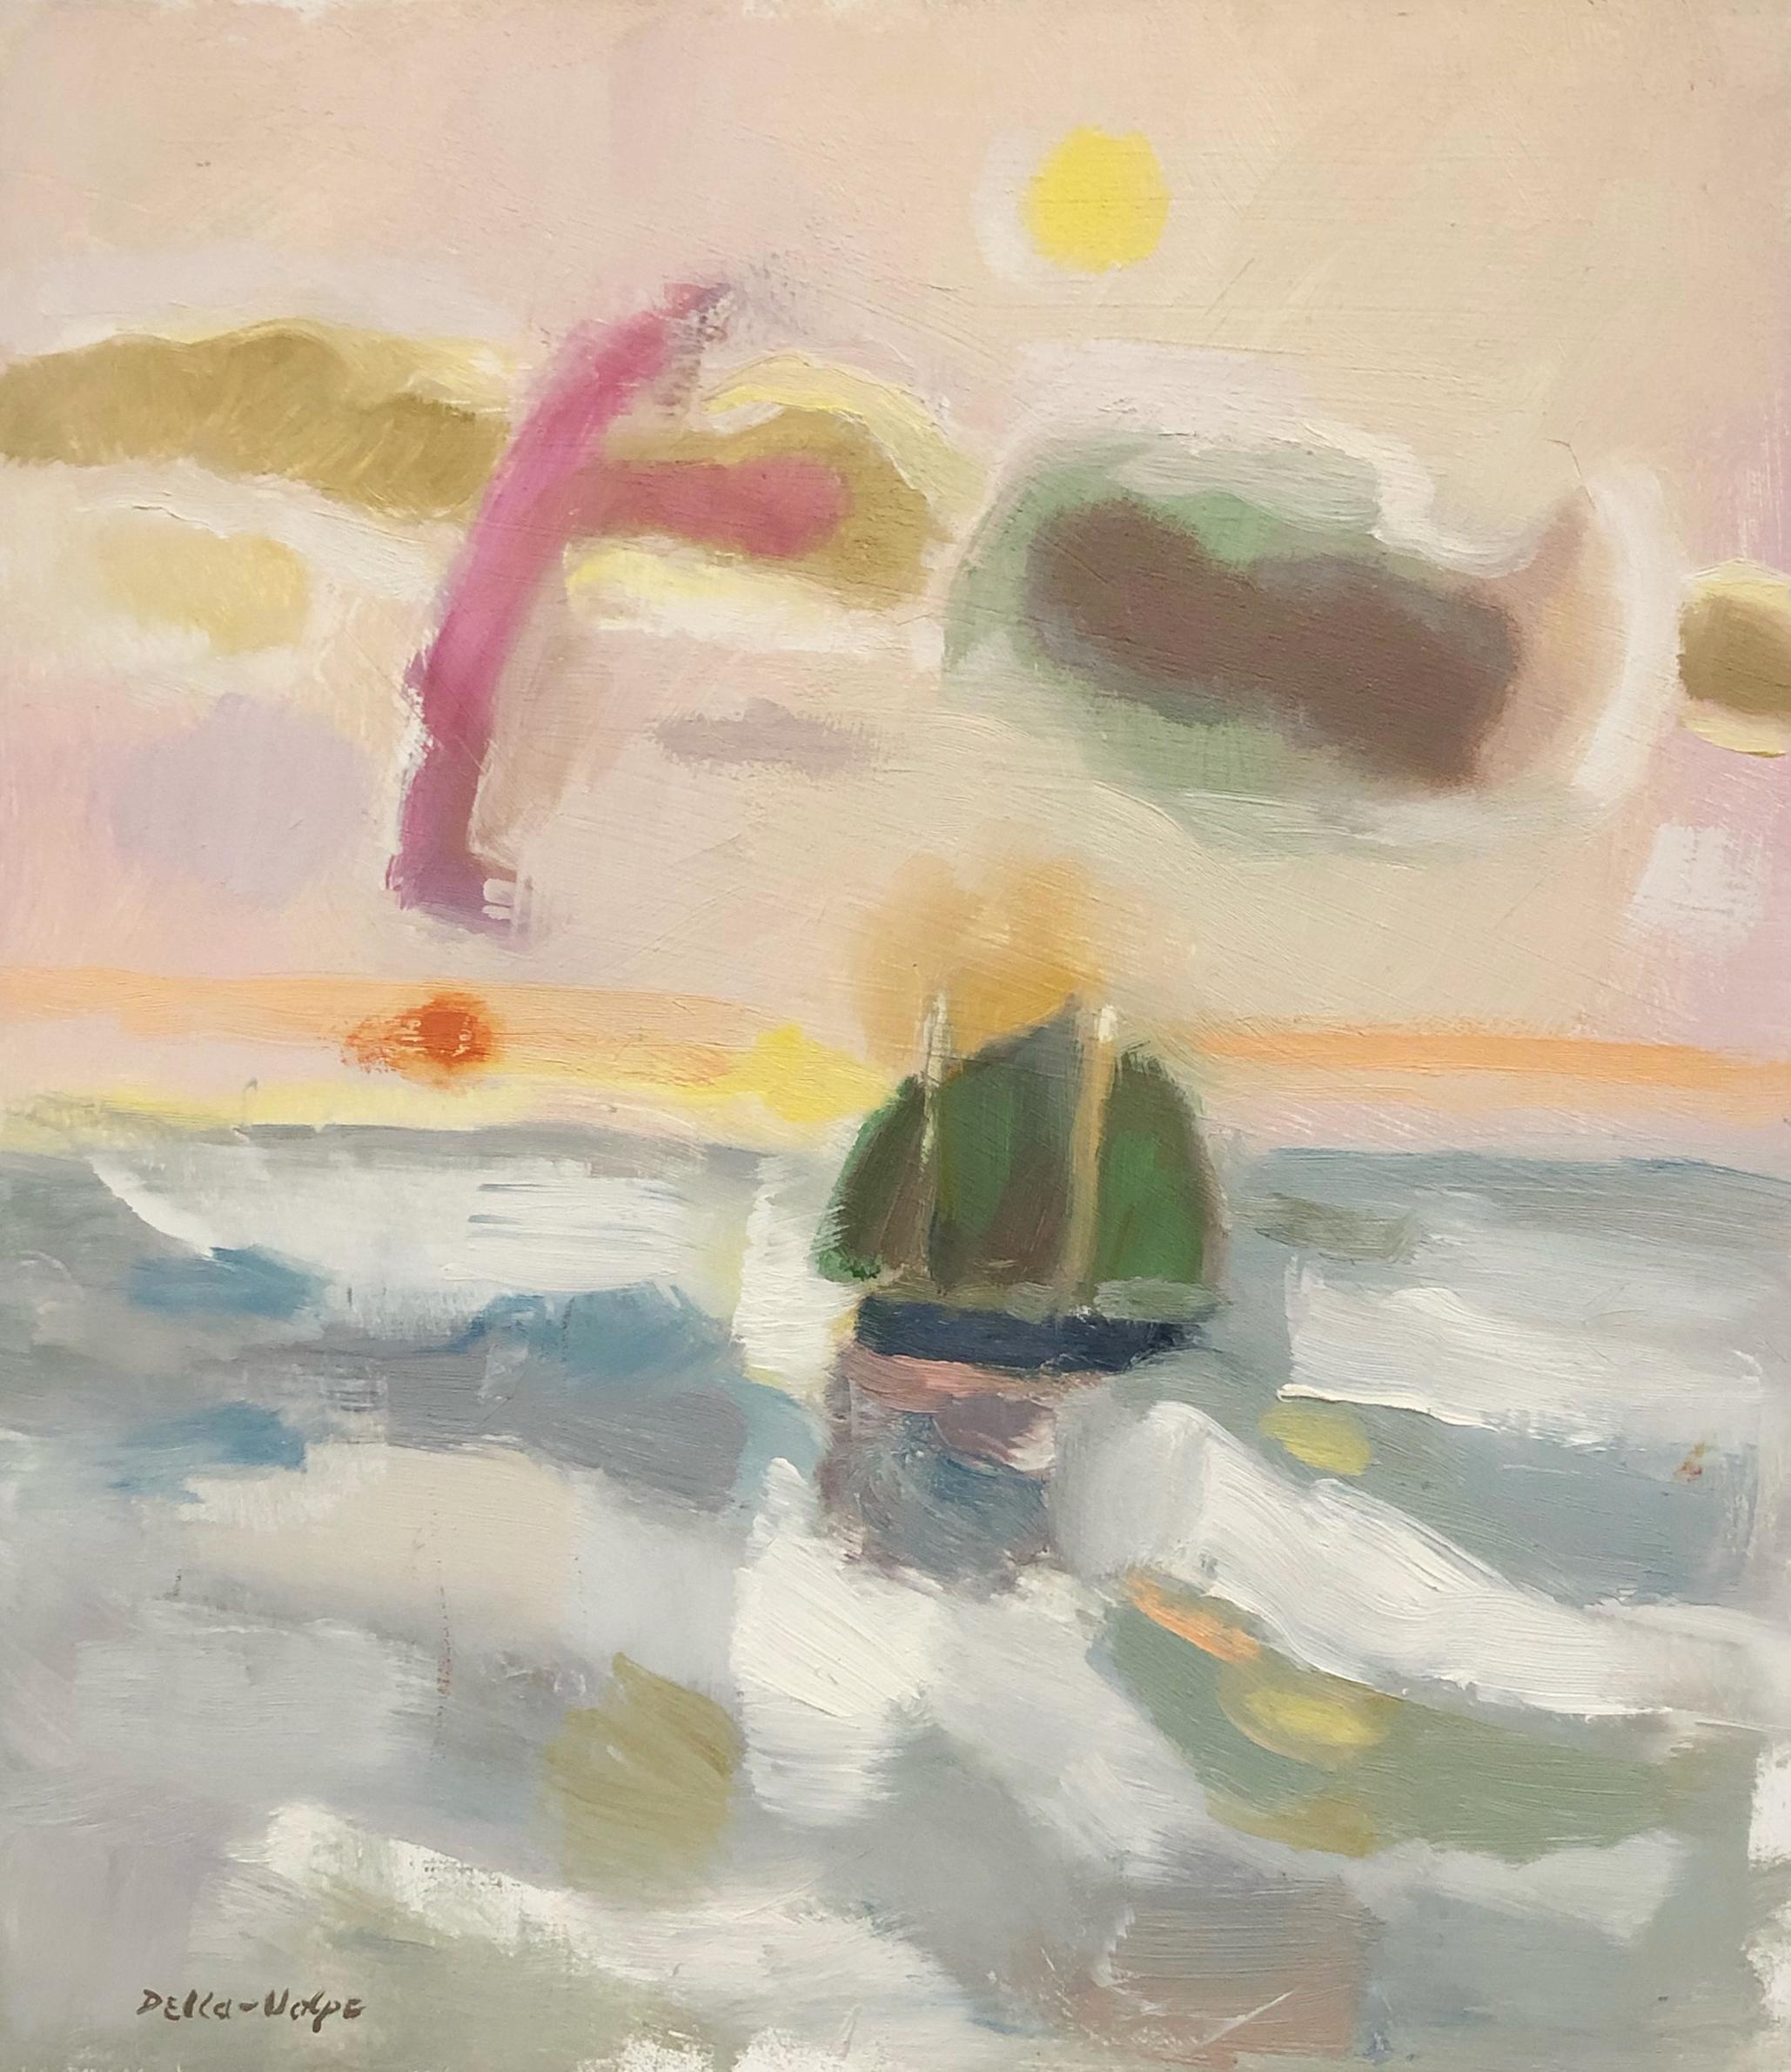 Head to Sea, scène de voile moderniste - Painting de Ralph Eugene Della-Volpe